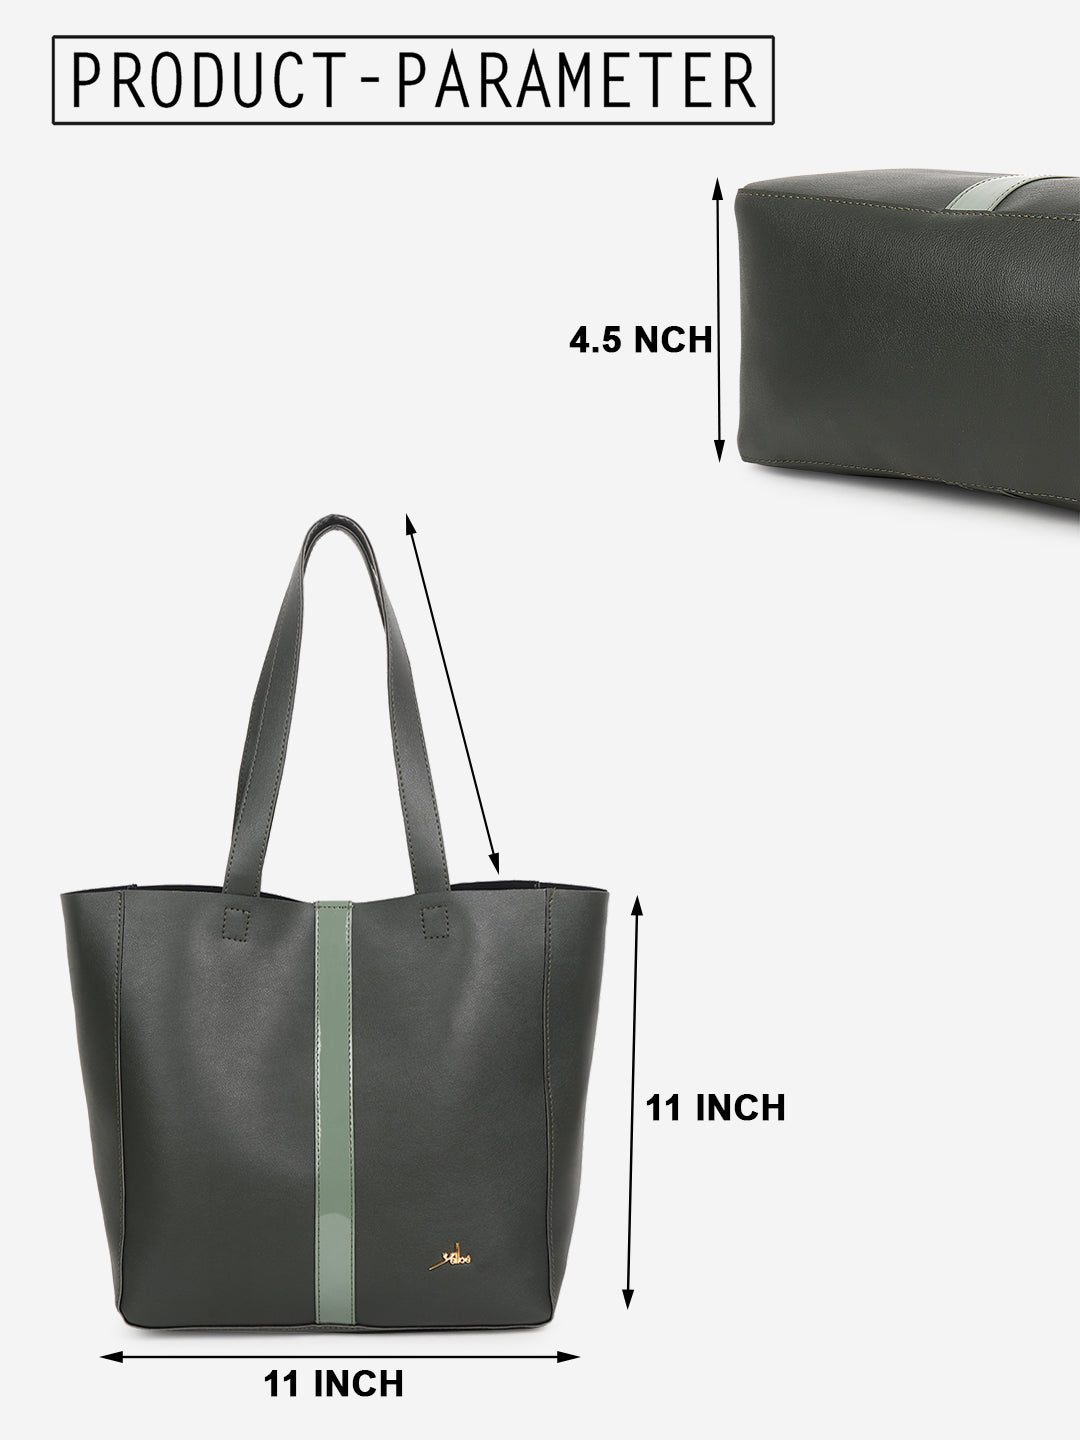 Bag in Bag shoulder Tote bag Green